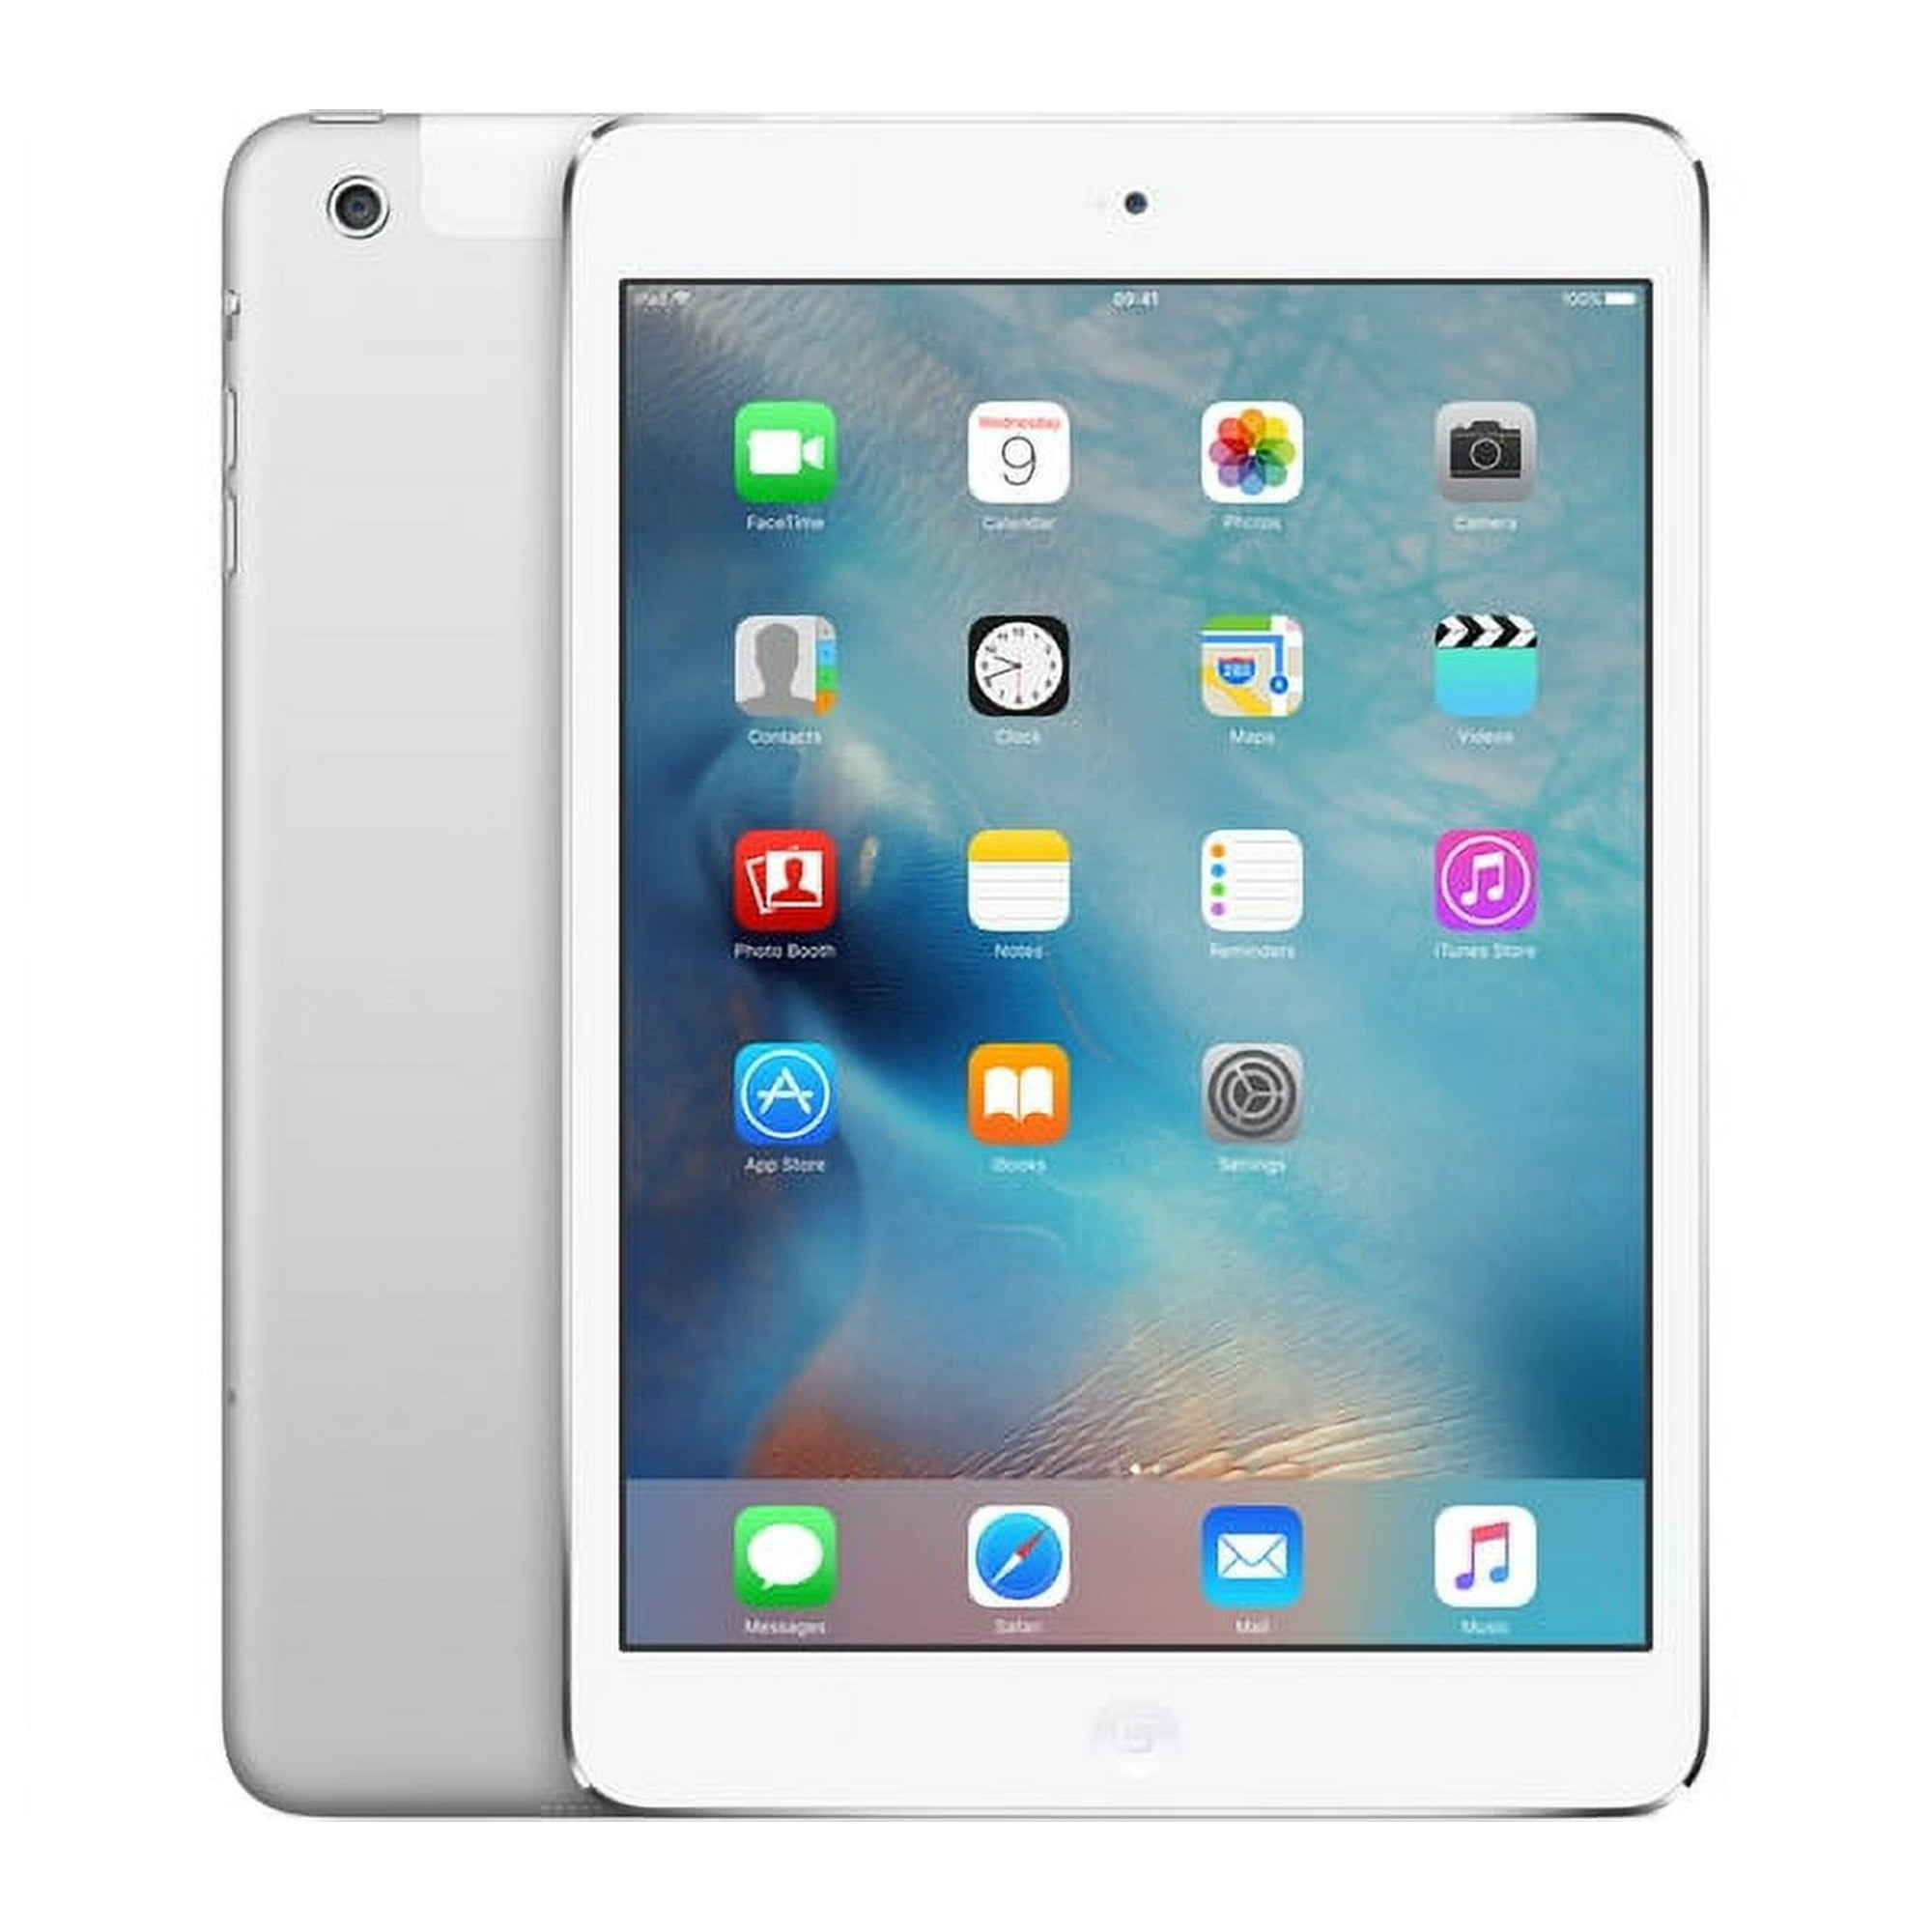 Apple iPad Air 2 64GB Silver Cellular MH2N2LL/A